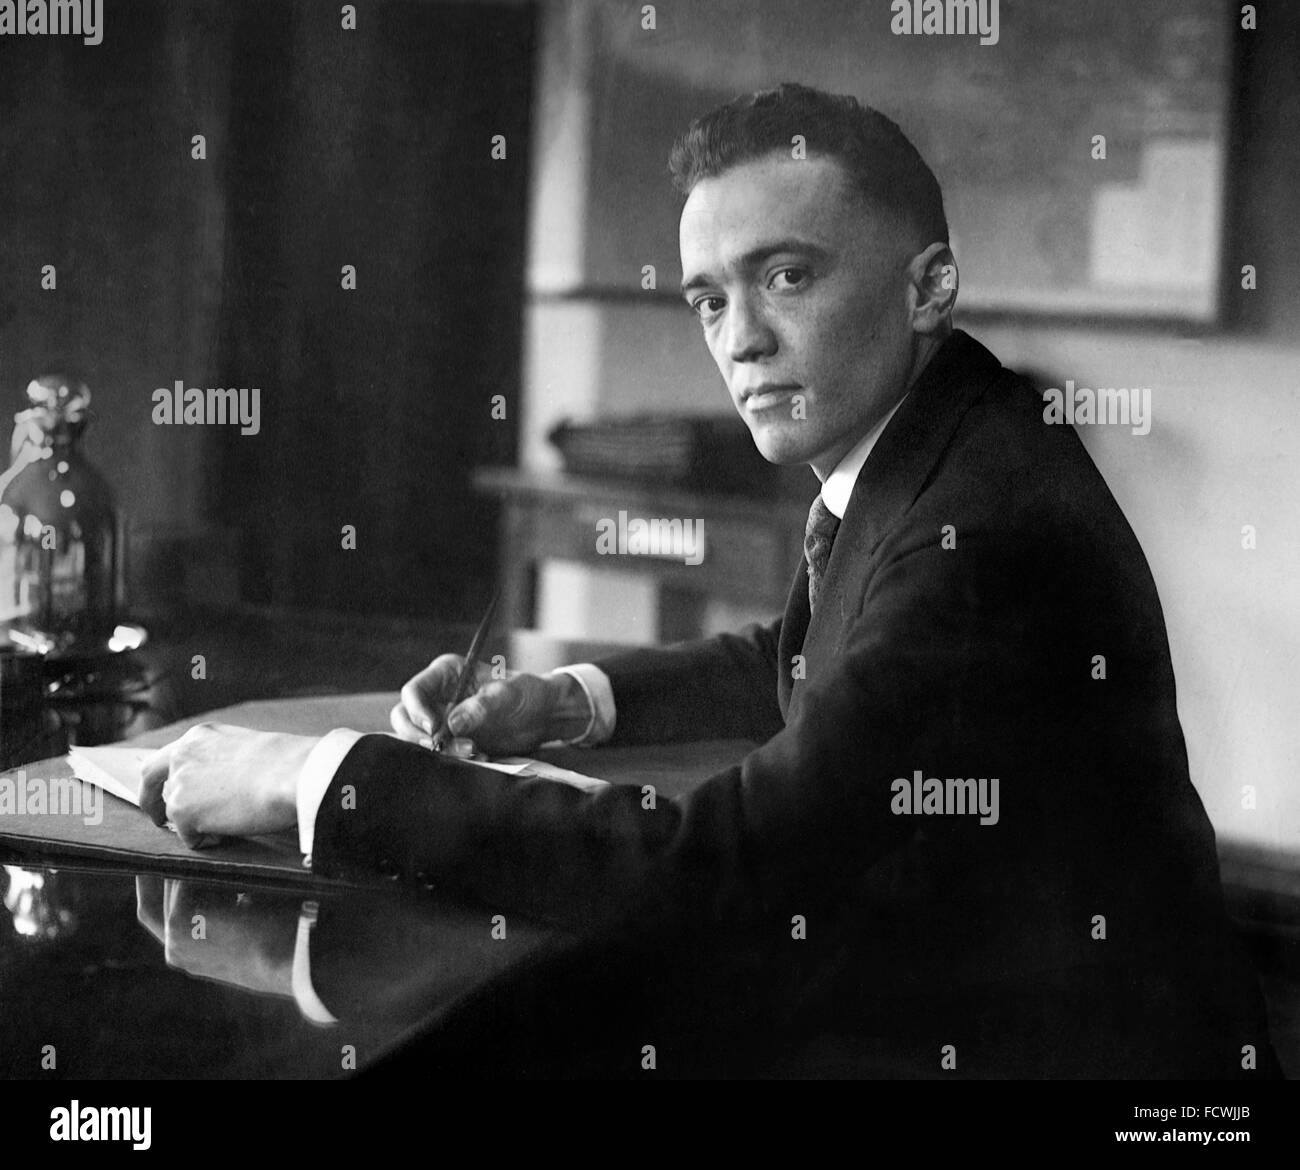 J Edgar Hoover, il primo direttore della Federal Bureau of Investigation (FBI) negli USA, dicembre 1924. Quando questa foto è stata scattata, aveva solo 29 anni e direttore dell'Ufficio di presidenza di inchiesta, precursore del FBI. Foto Stock